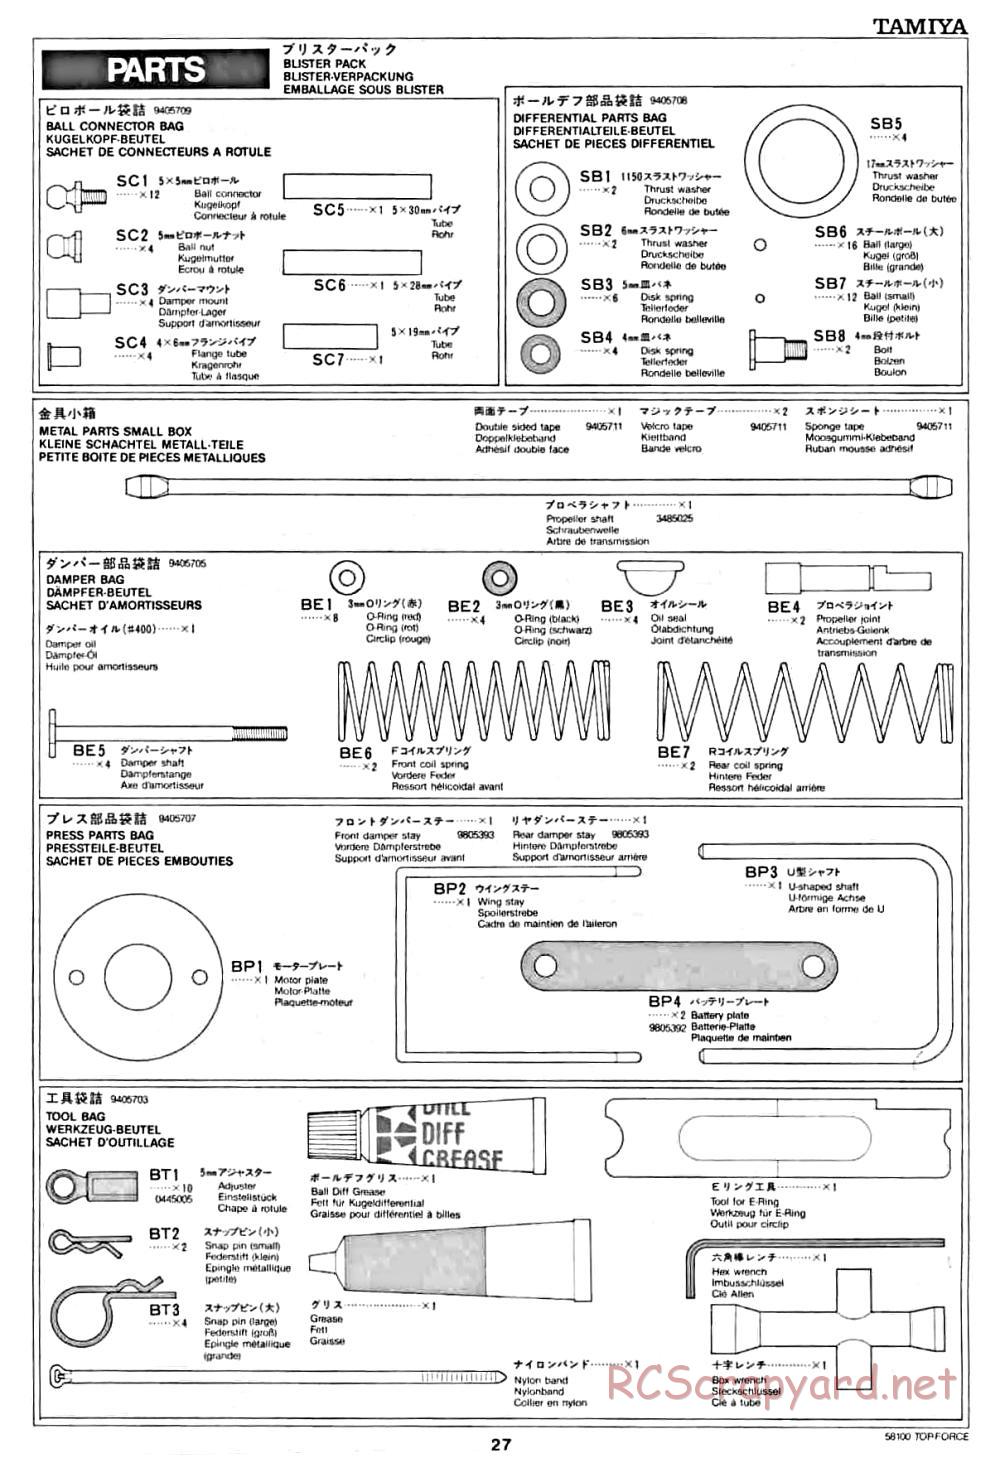 Tamiya - Top Force - 58100 - Manual - Page 27